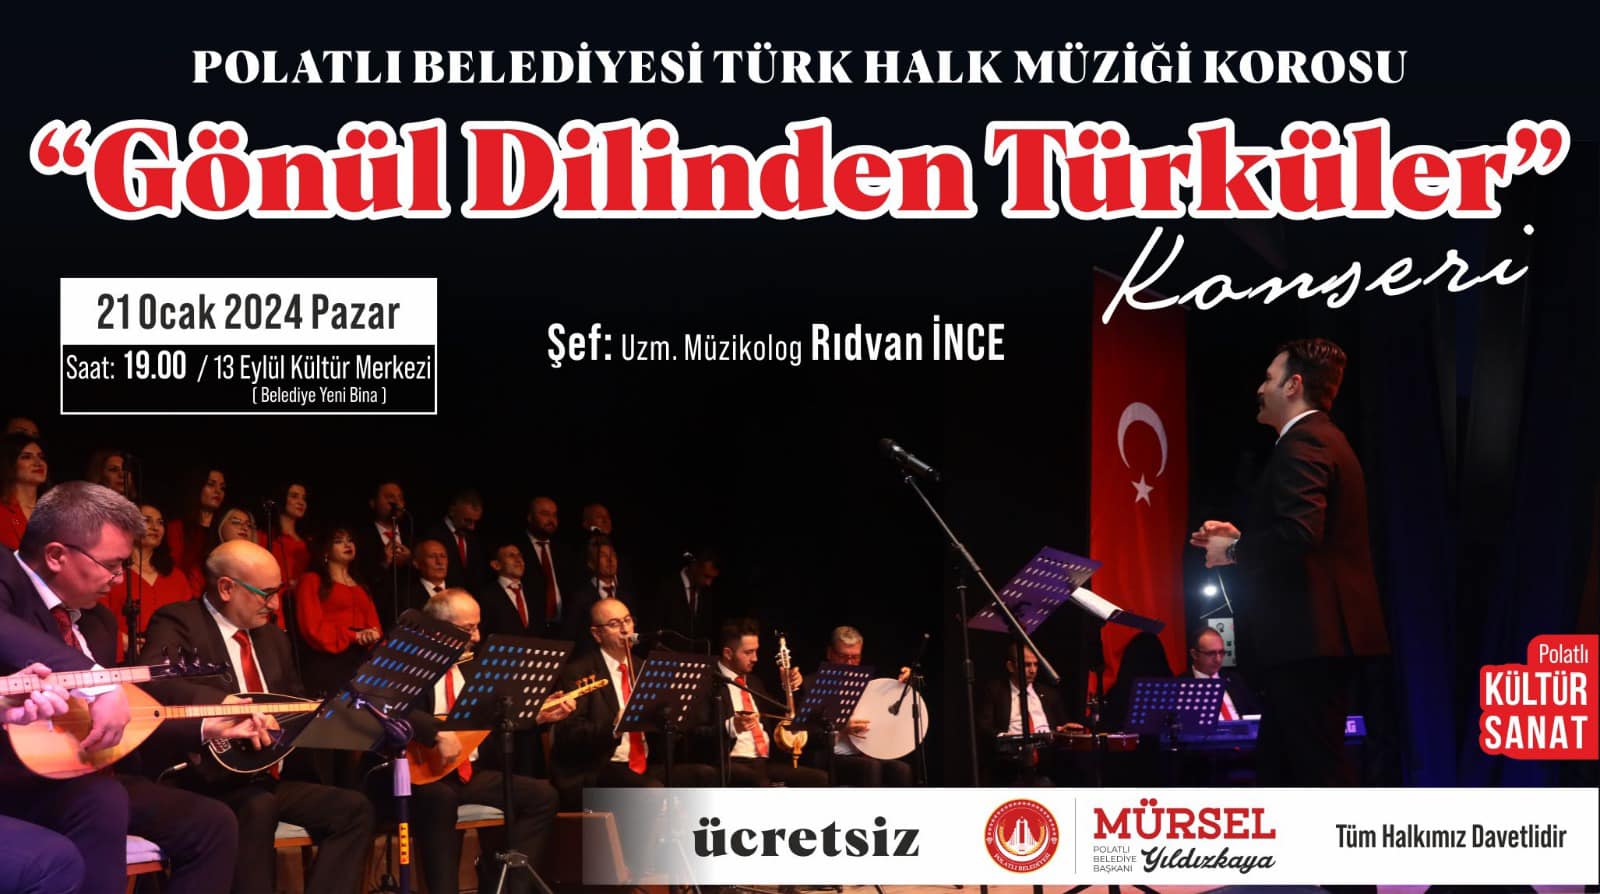 Polatlı Belediyesi Türk Halk Müziği Korosu Sanatseverlerle Buluşuyor (2)